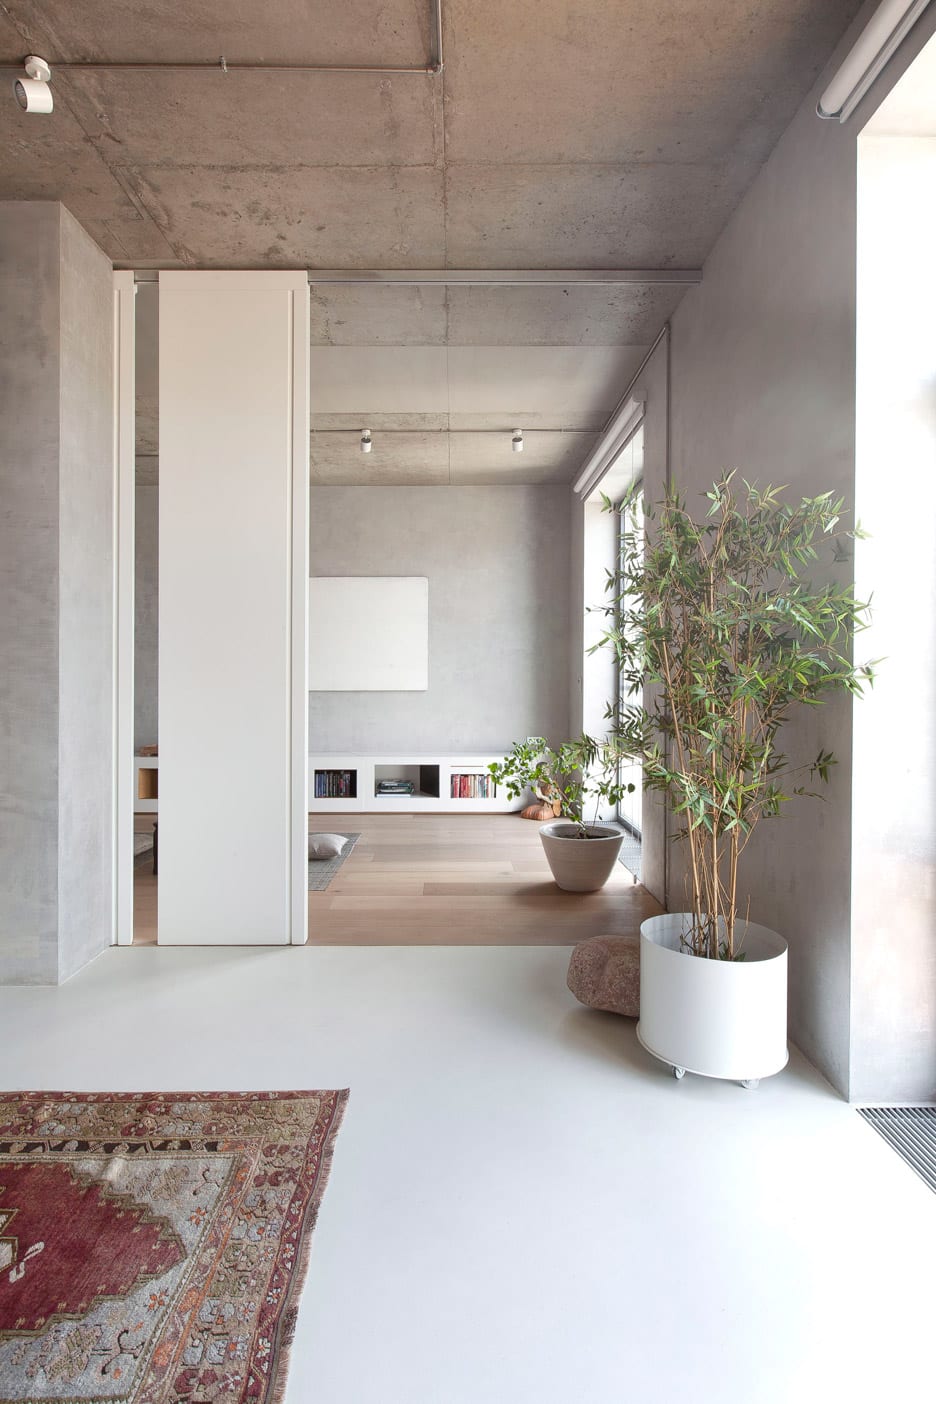 Studio M17 koos voor dit stijlvolle moderne interieur voor een combinatie van een licht gietvloer met een lichte eiken houten vloer.